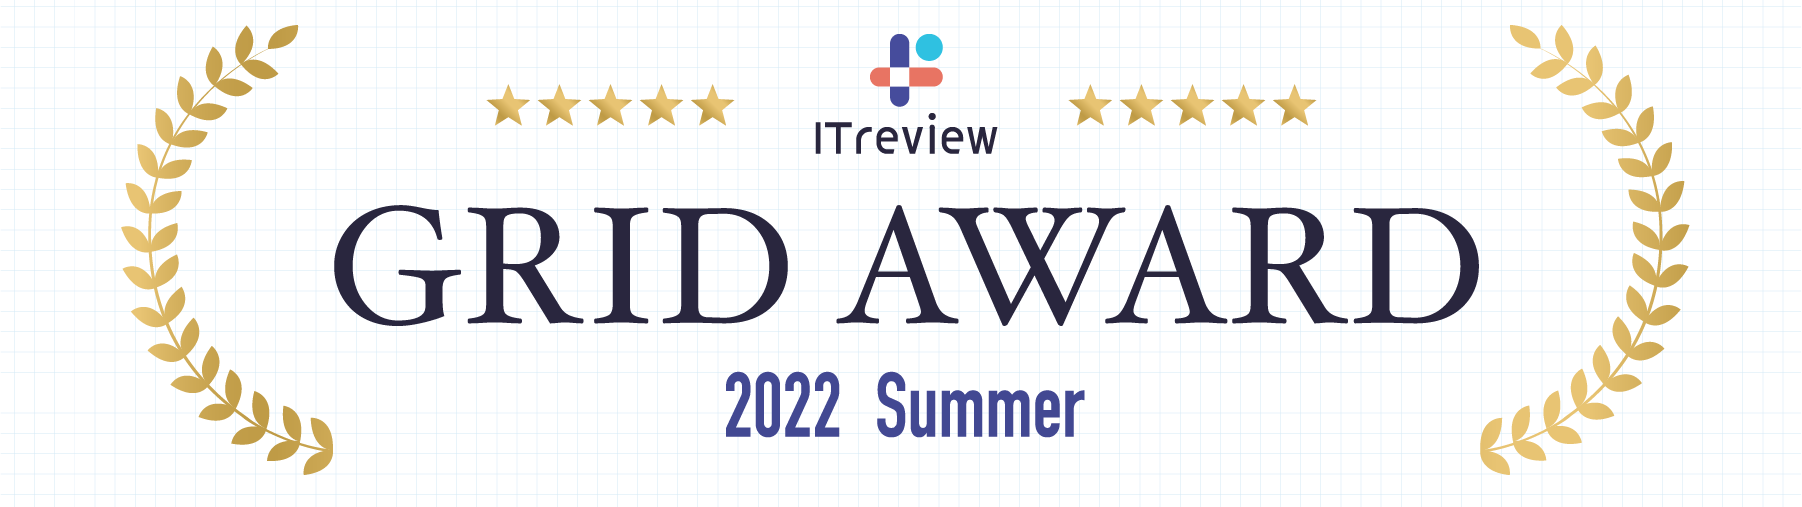 ロリポップが「ITreview Grid Award 2022 Summer」で「Leader」を獲得しました